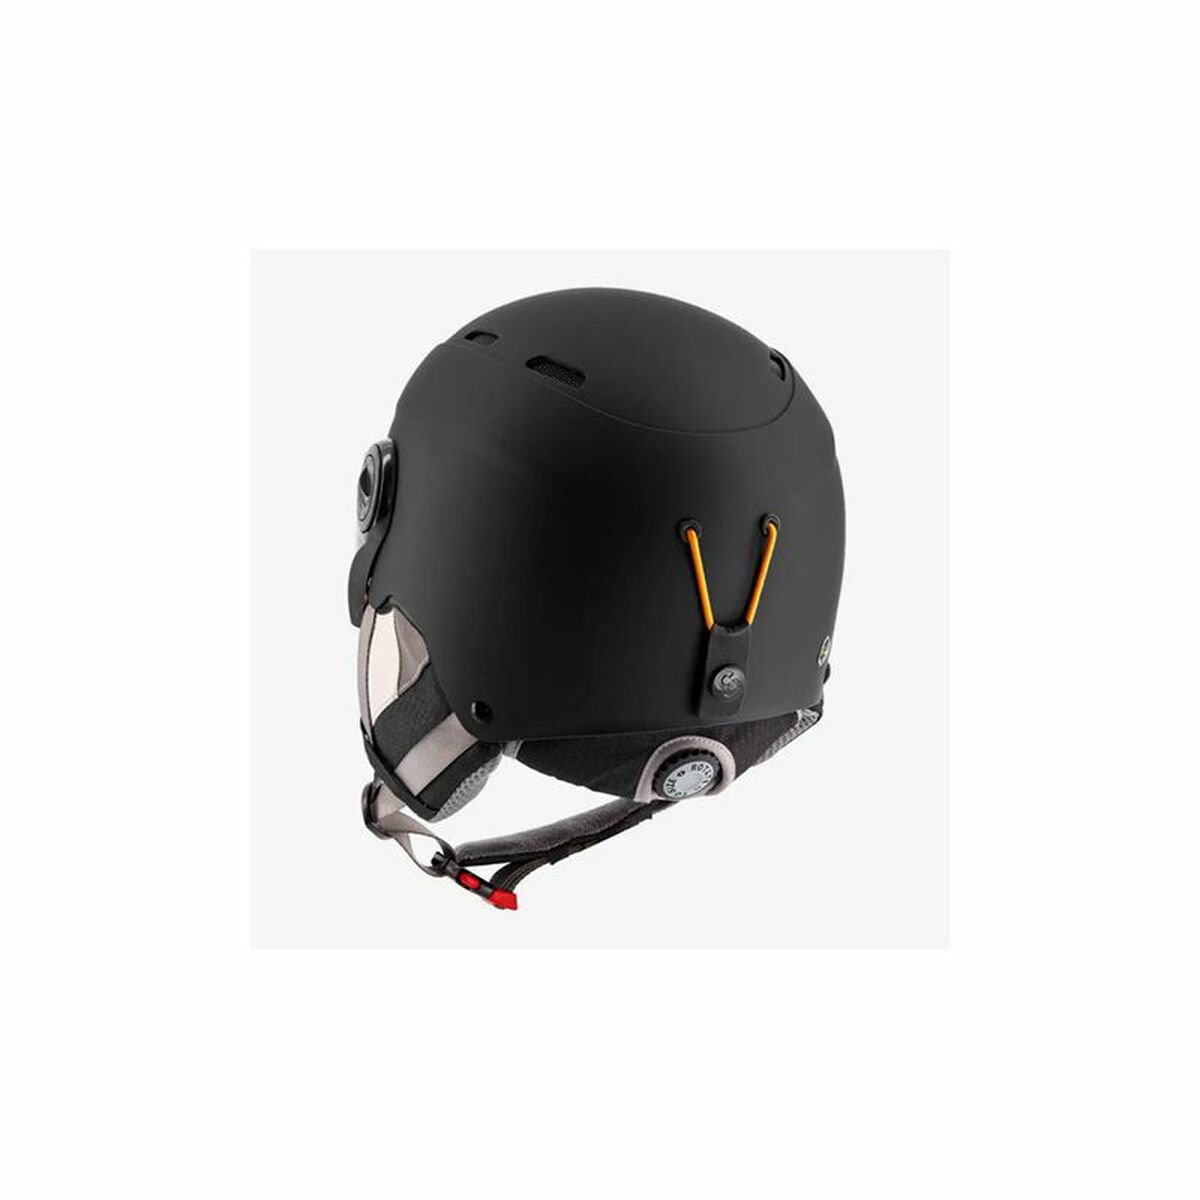 Ski Helmet Sinner Typhoon Visera Black Unisex 59-61 cm